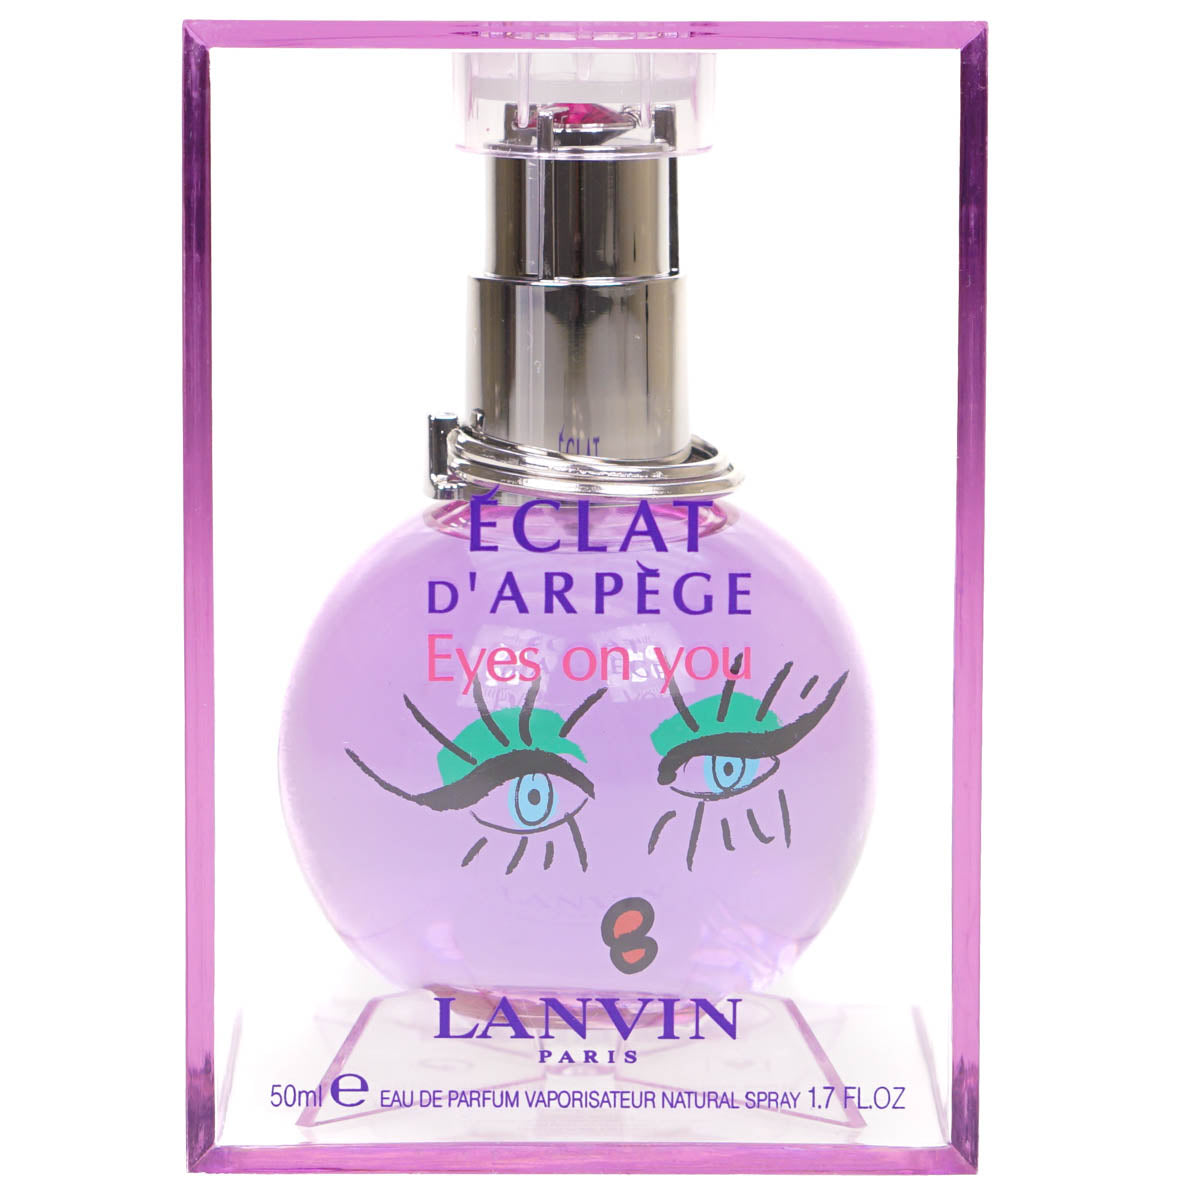 Lanvin Eclat D'Arpege Eyes On You 50ml Eau De Parfum